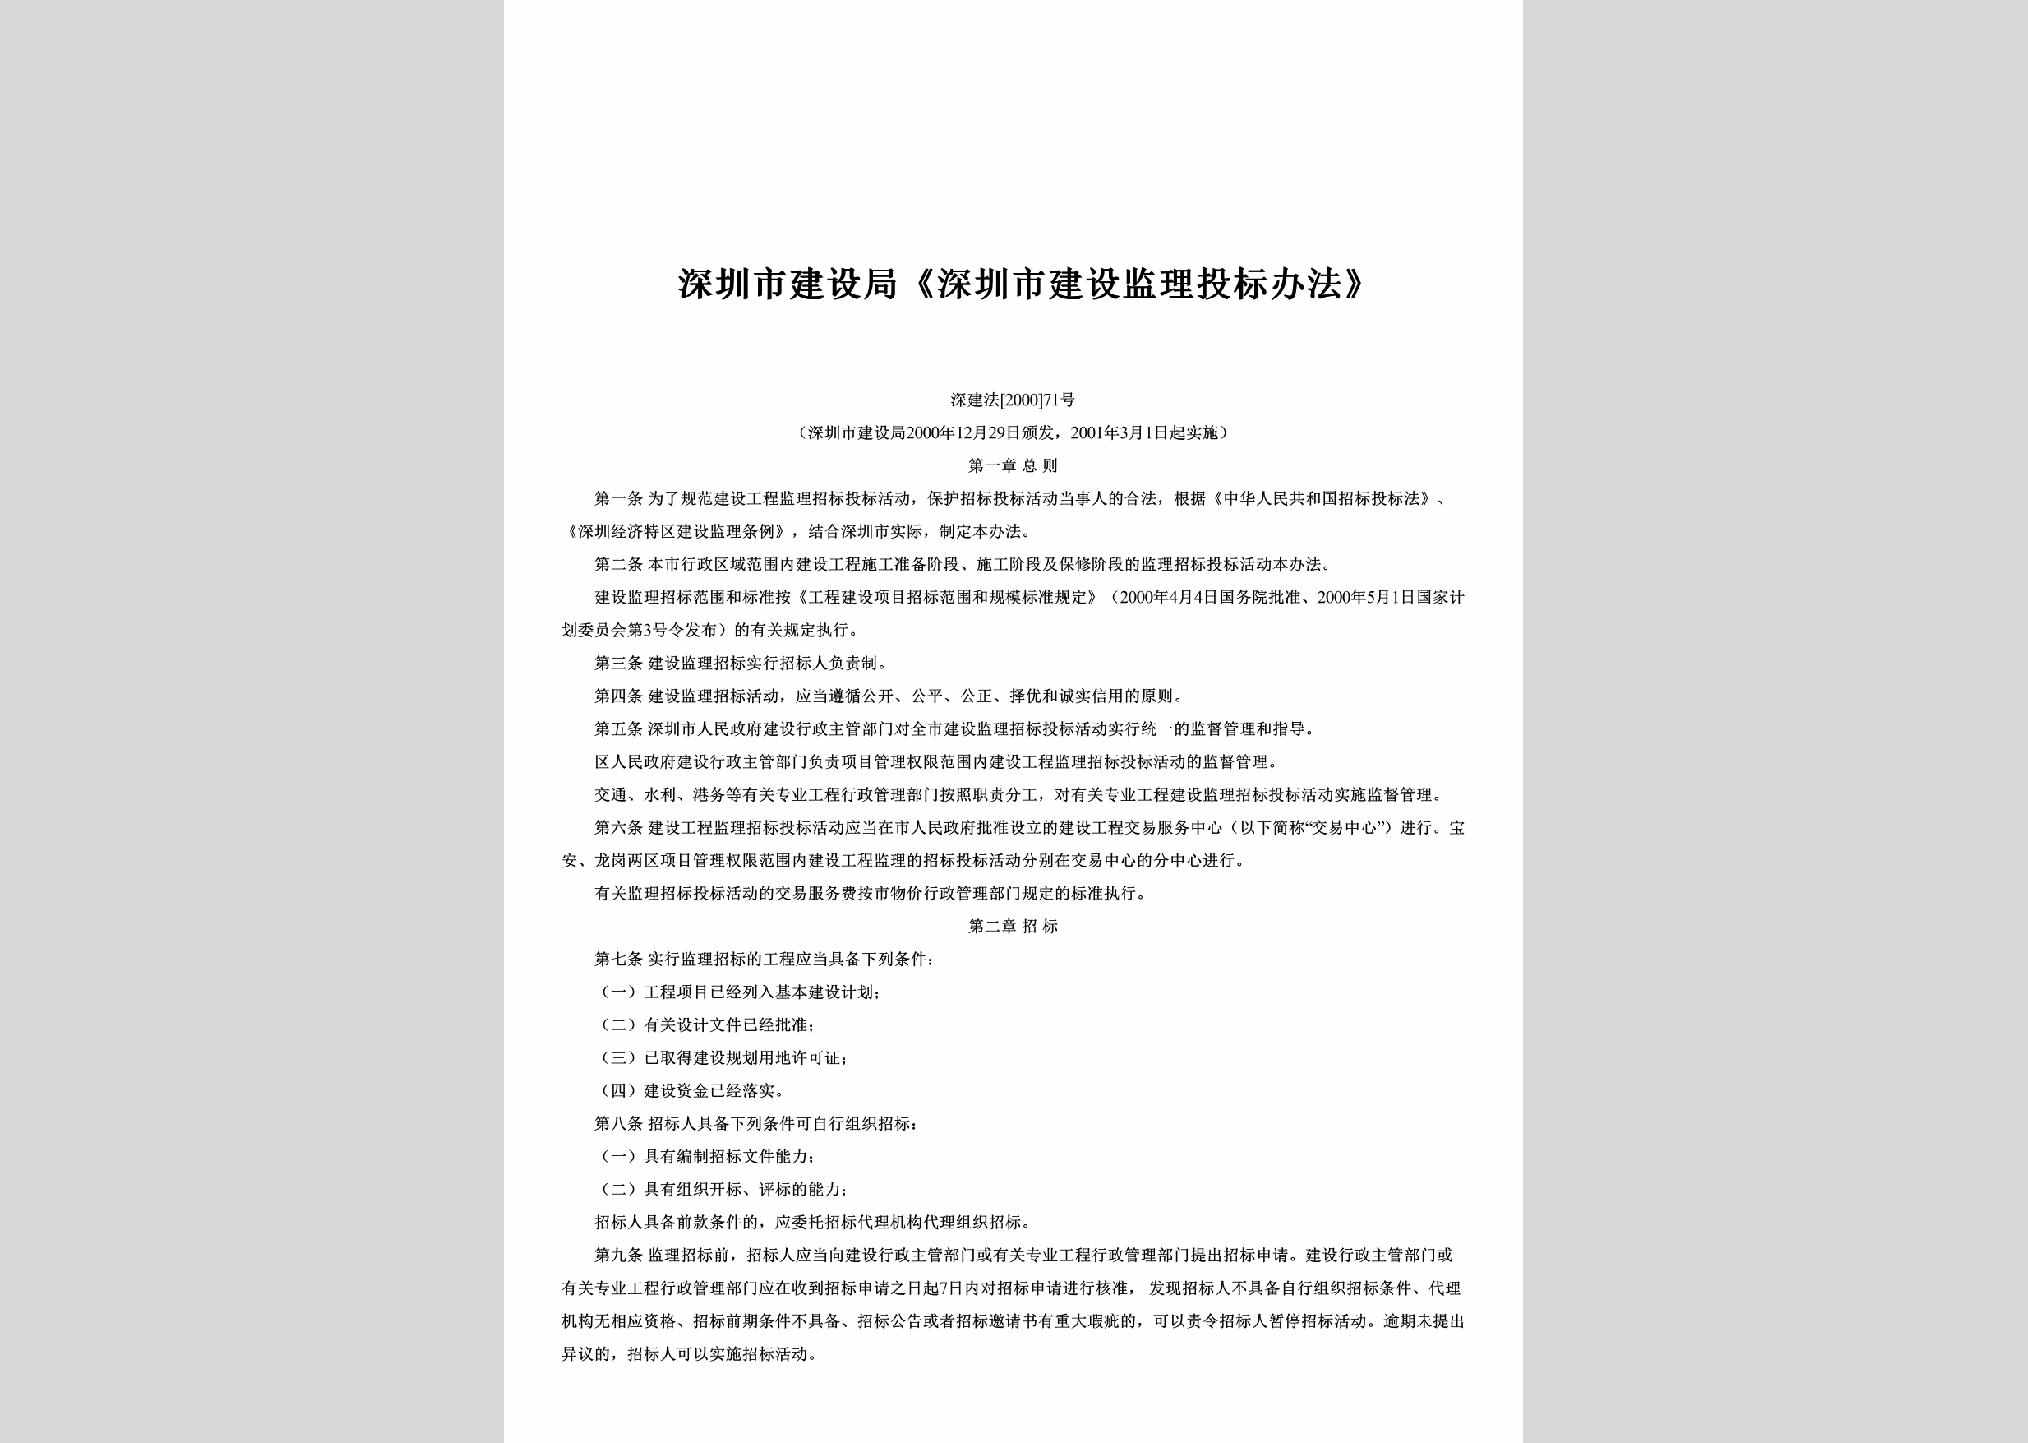 深建法[2000]71号：《深圳市建设监理投标办法》